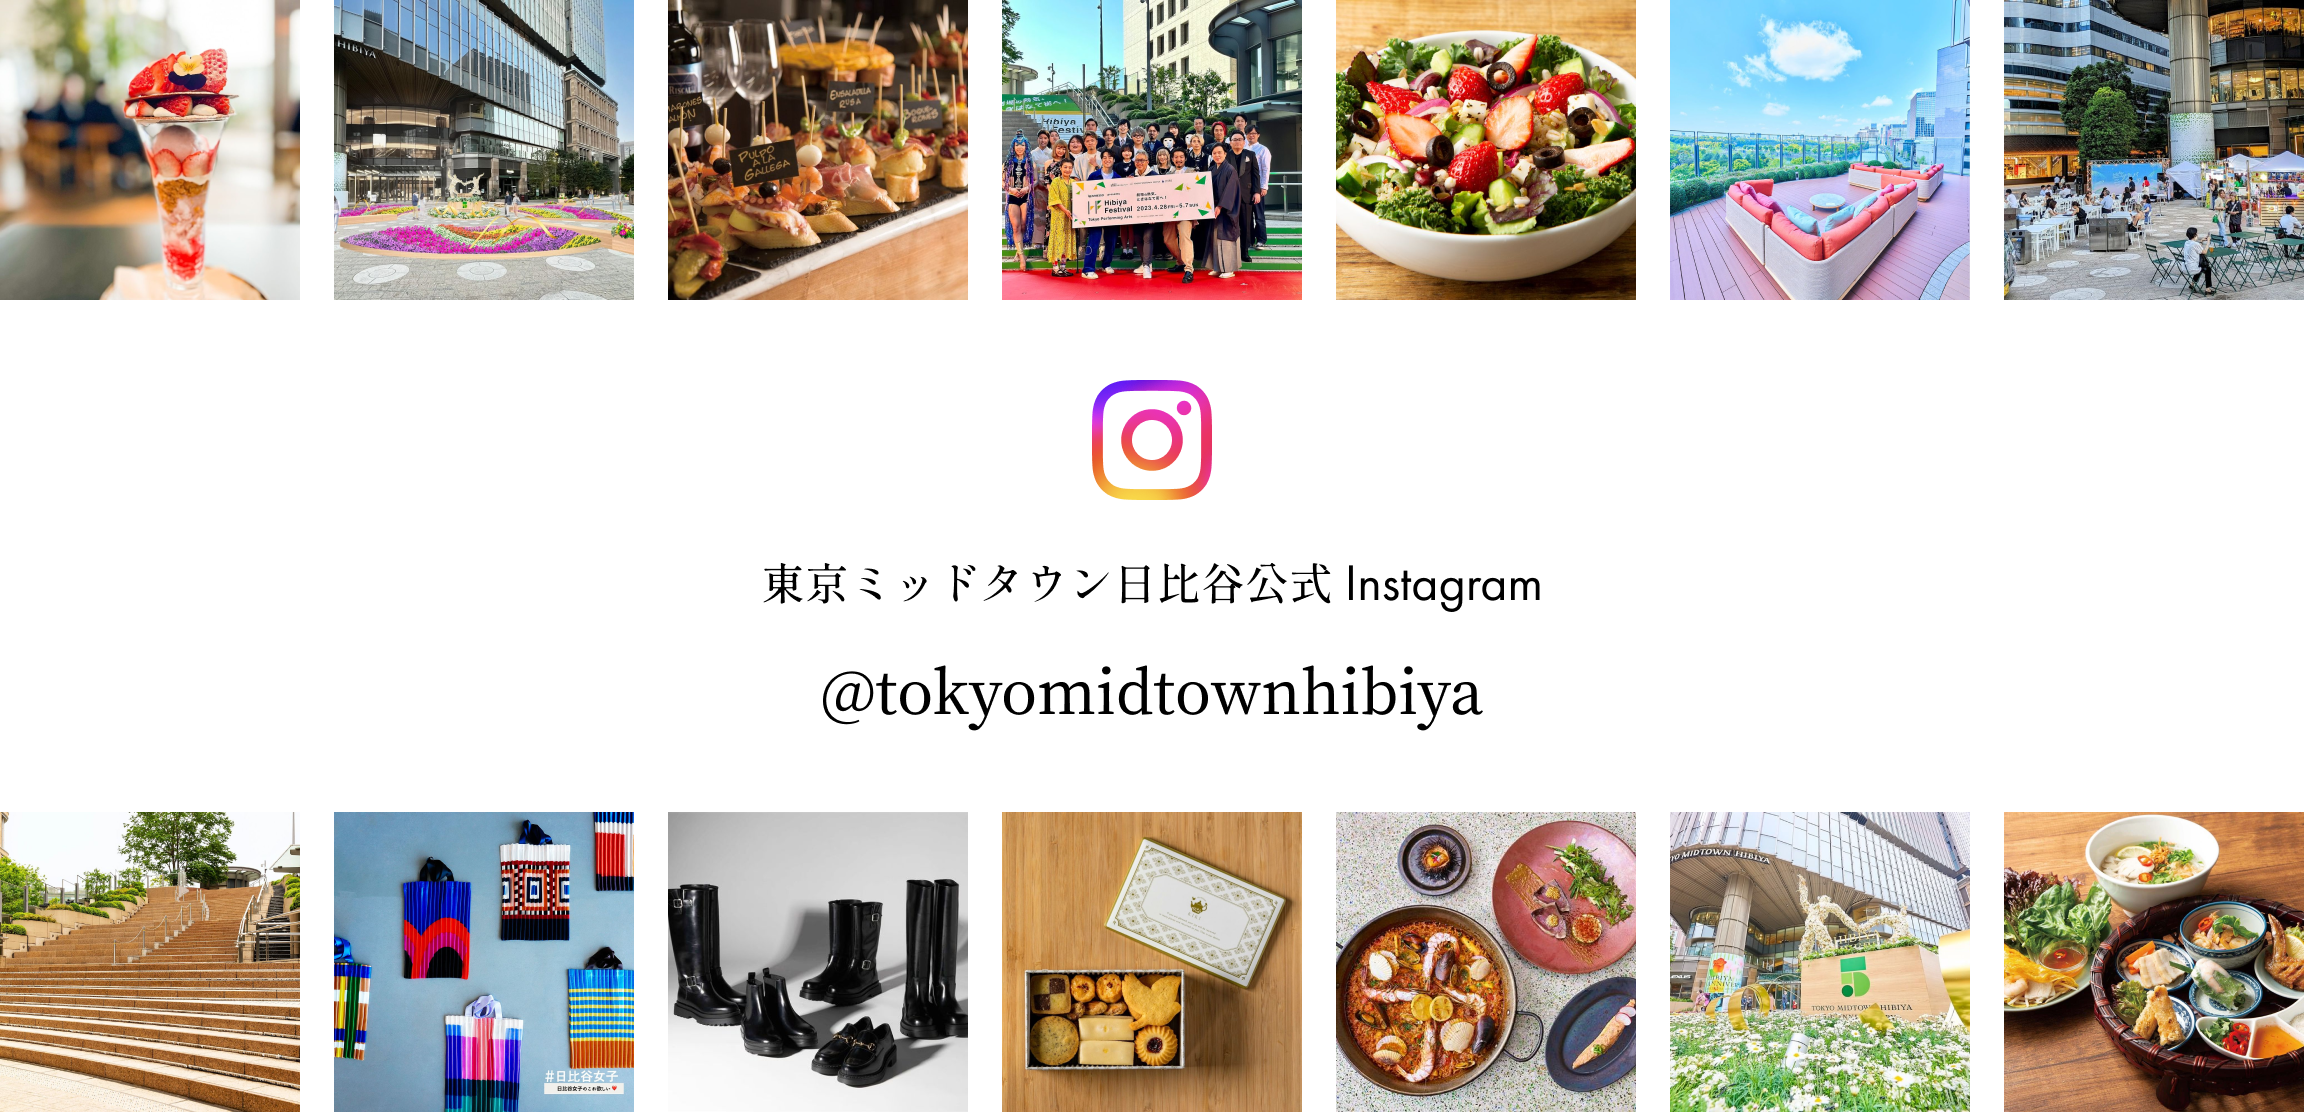 東京ミッドタウン日比谷公式Instagram @tokyomidtownhibiya